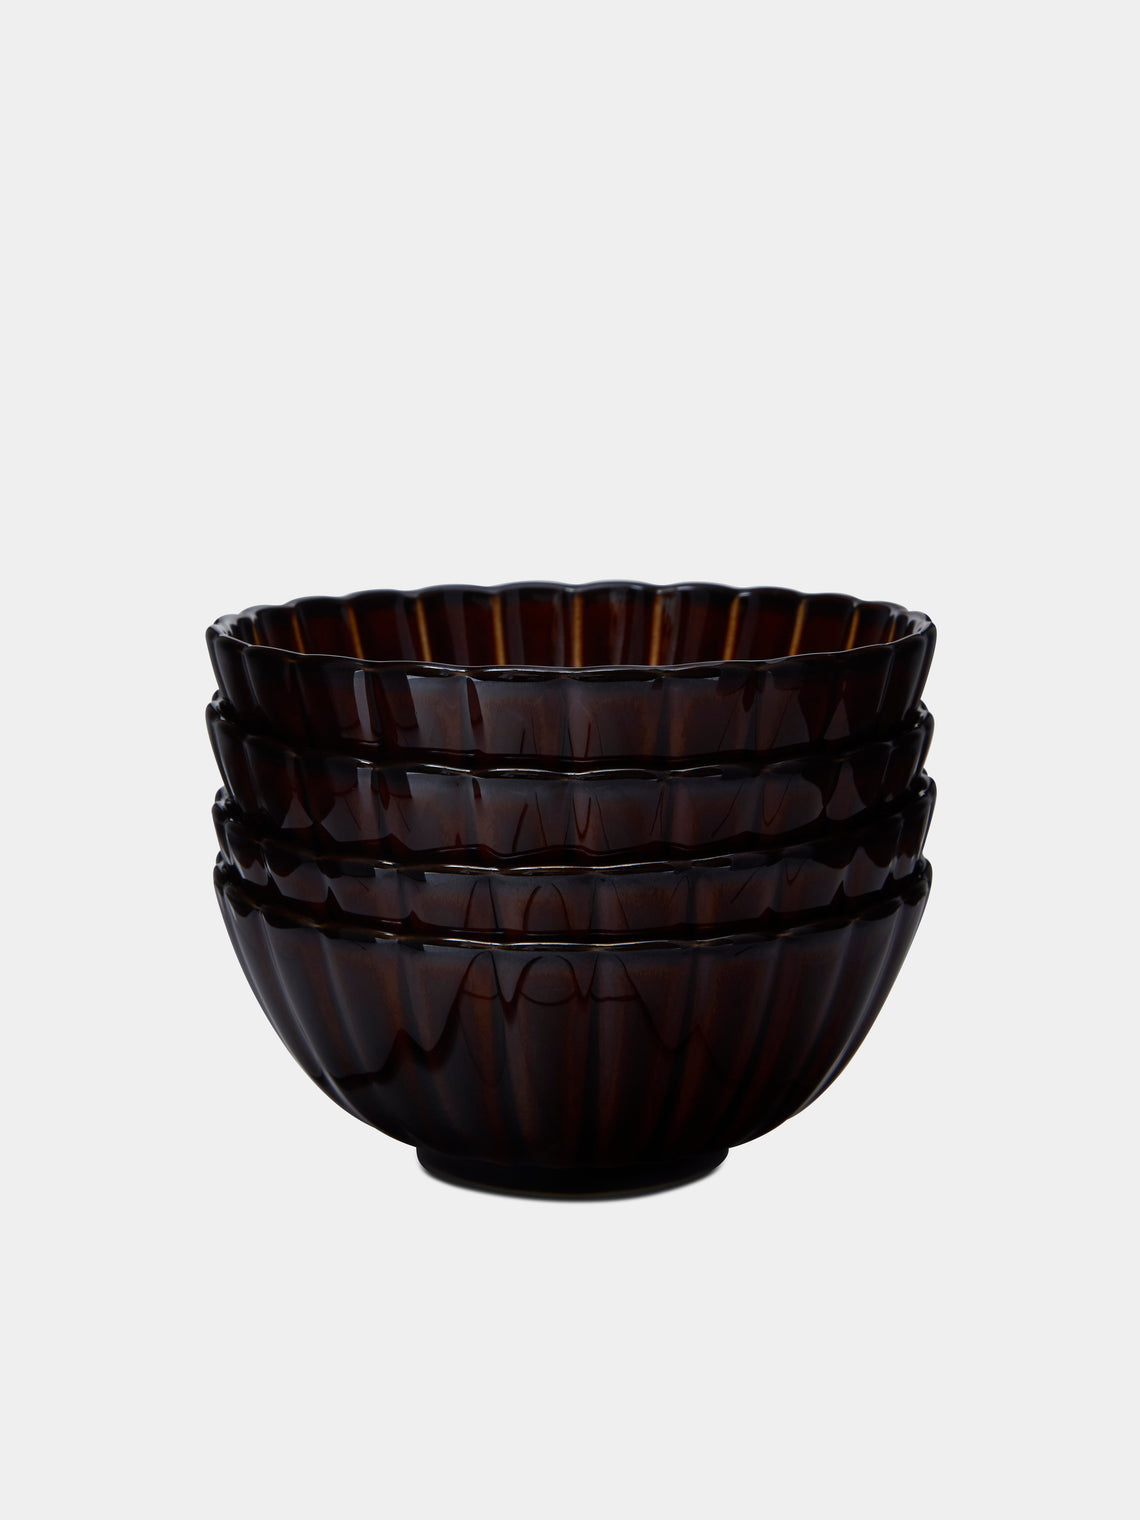 Kaneko Kohyo - Giyaman Urushi Ceramic Bowls (Set of 4) - Brown - ABASK